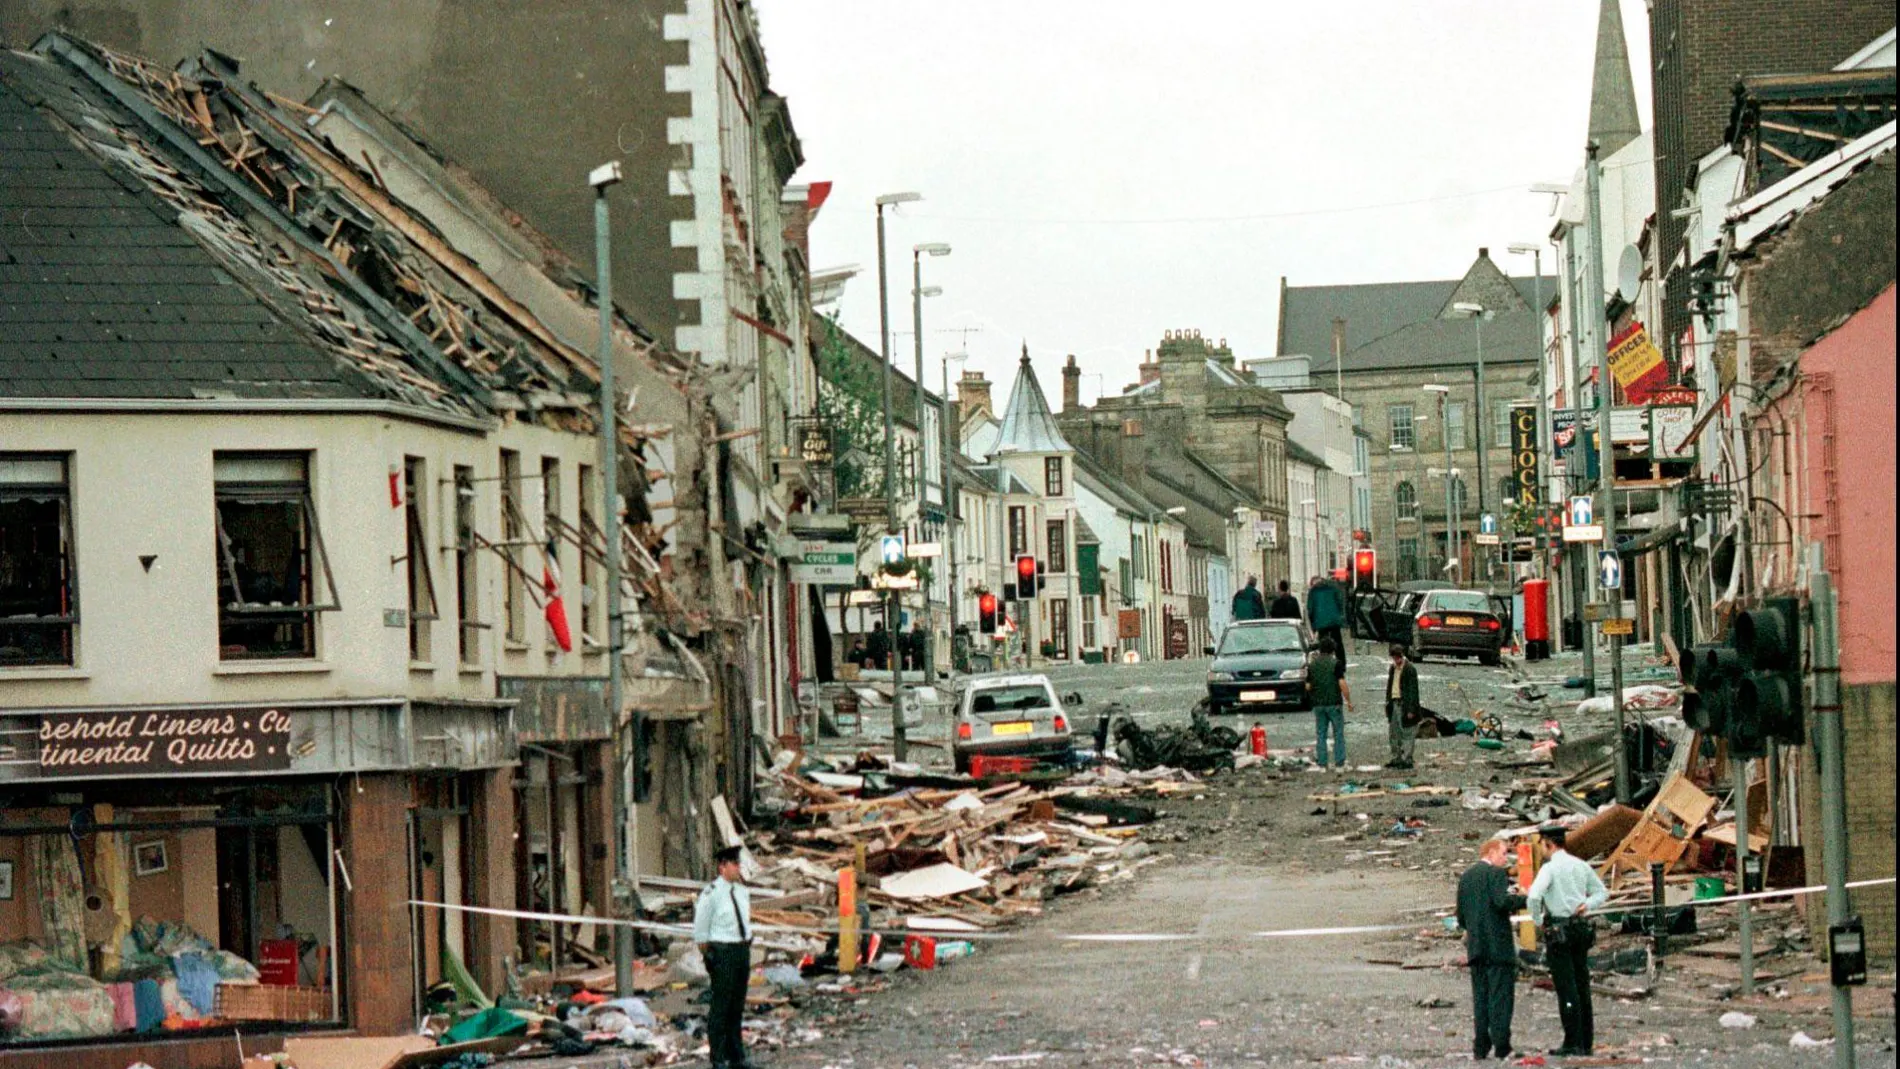 Escenario de la explosión de un coche bomba en el centro de Omagh, a 72 millas de Belfast, Irlanda del Norte, en agosto de 1998